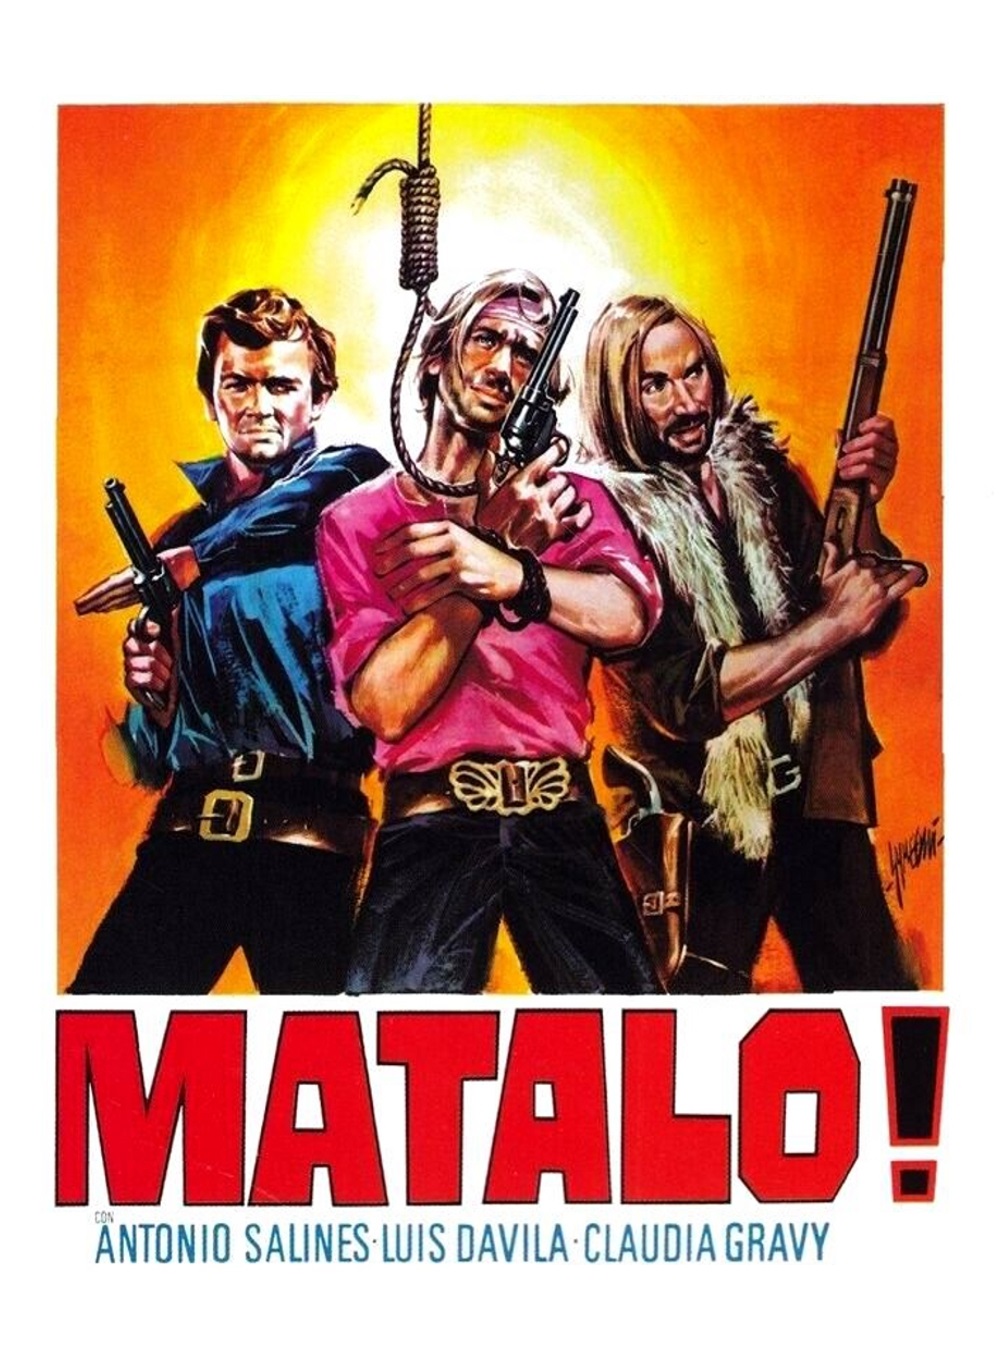 Matalo! [HD] (1970)